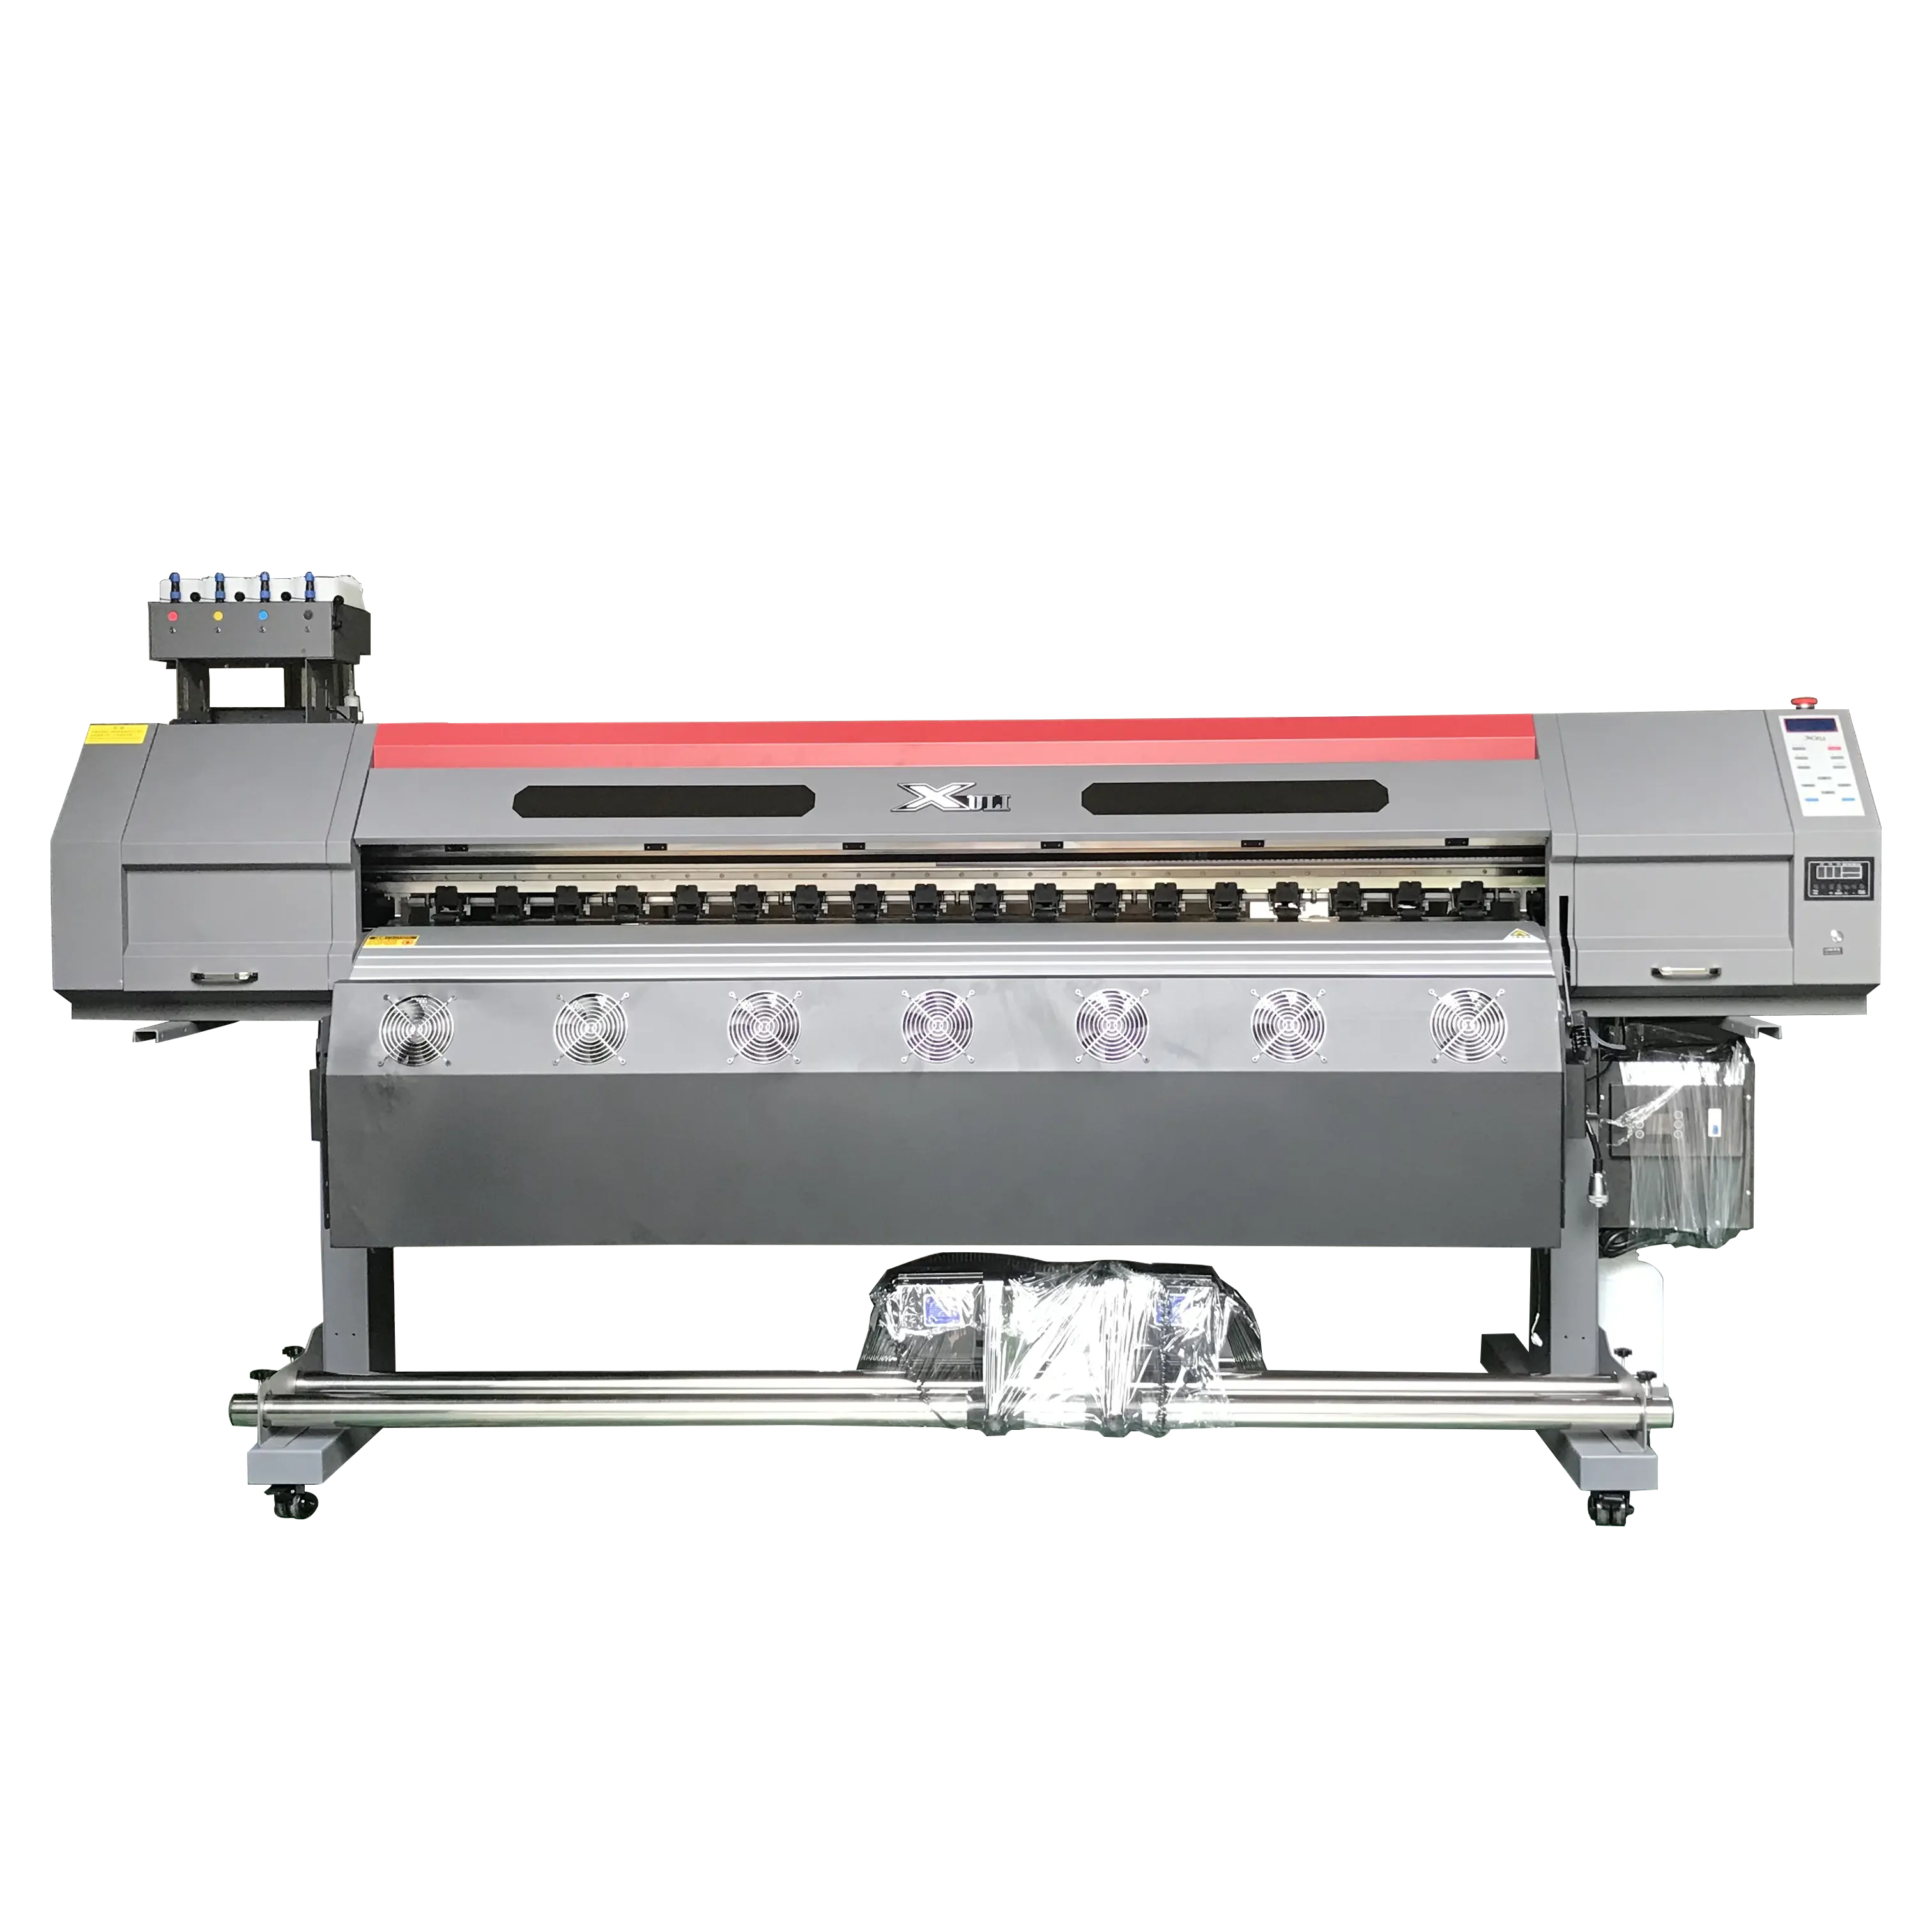 6-футовый брезентовый рекламный принтер, Широкоформатная эко-растворяная печатная машина, наружный баннер, ПВХ, эко-растворитель, принтер 2400 dpi